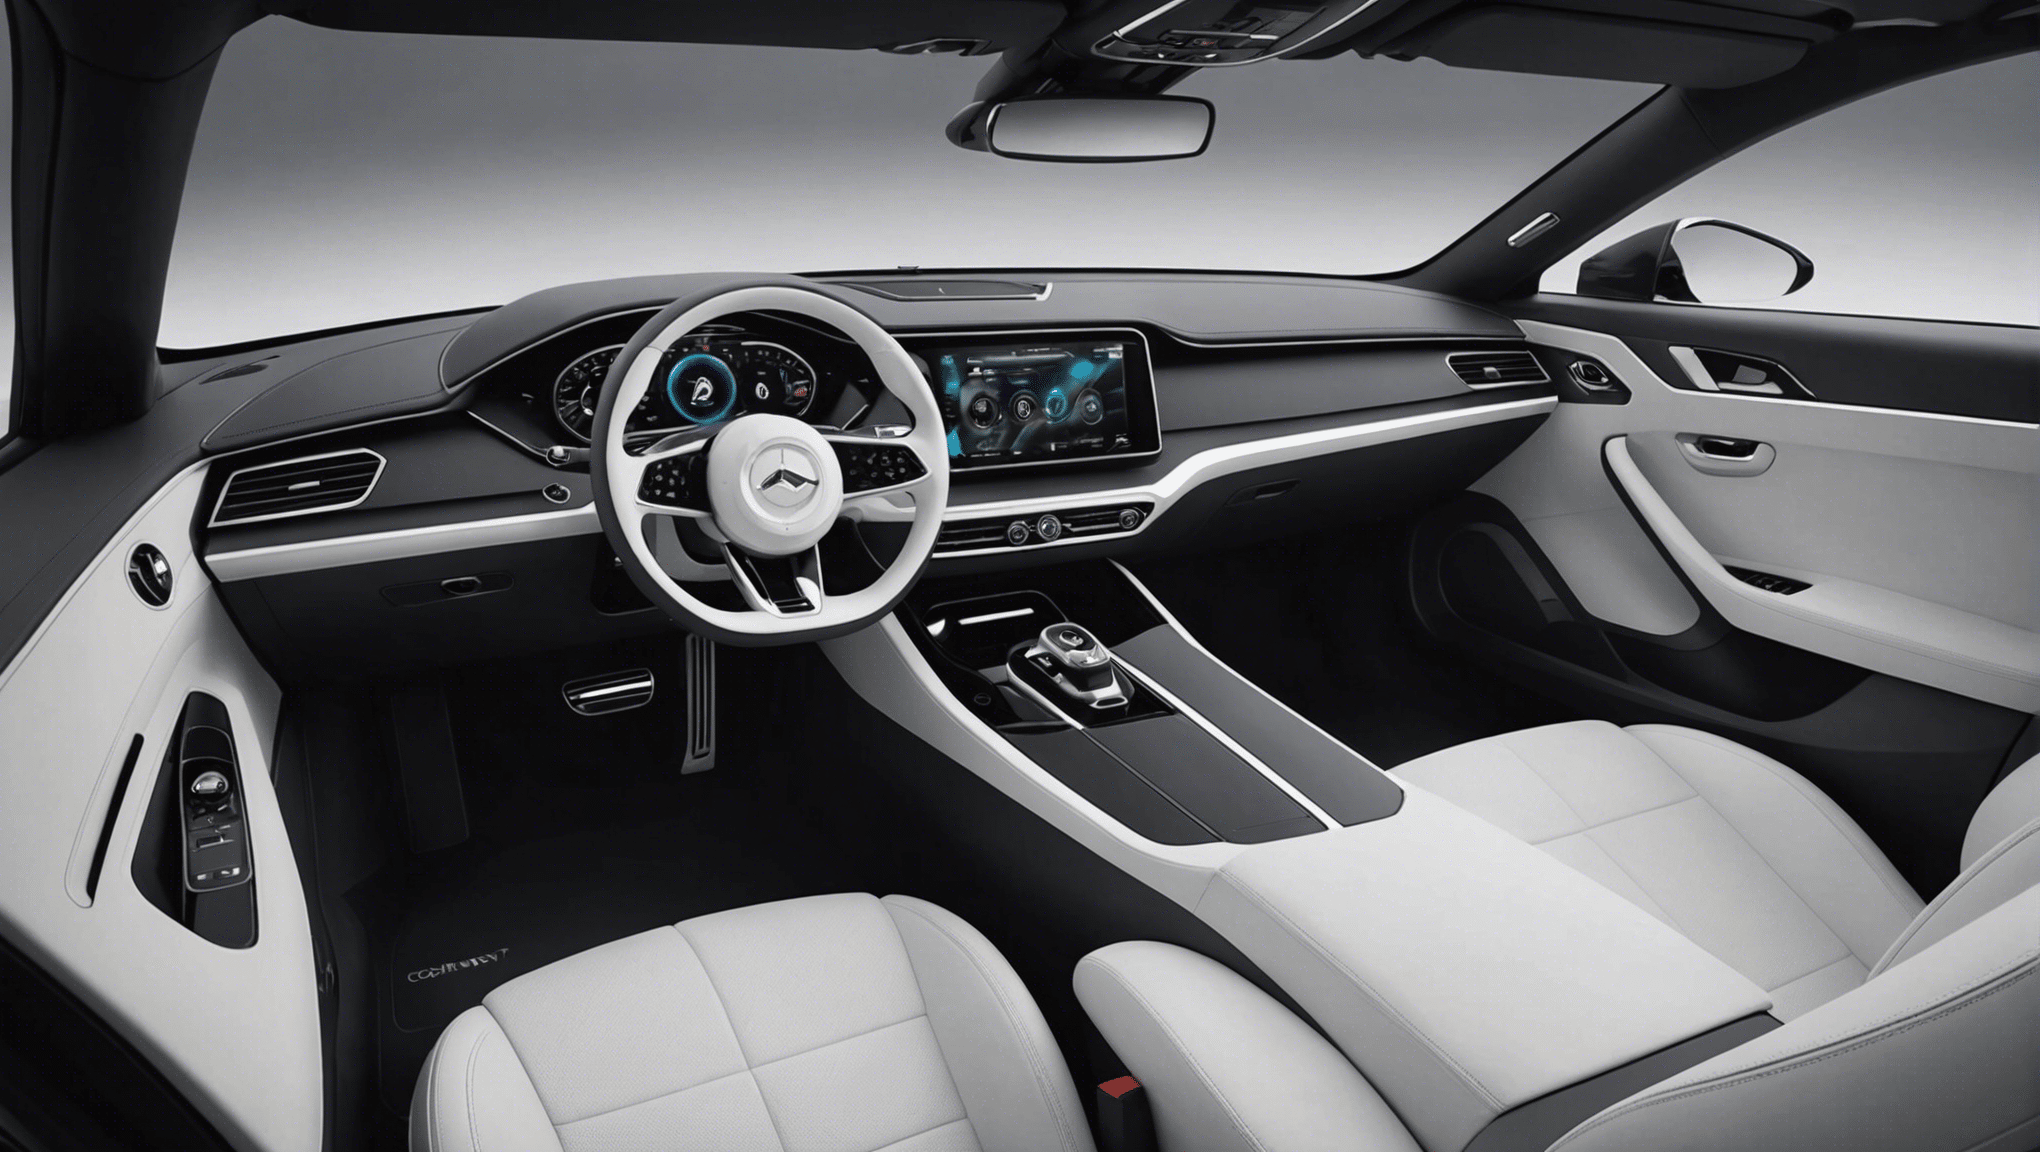 découvrez comment les designs intérieurs des voitures du futur évolueront et s'adapteront à de nouvelles technologies et tendances de style. explorez l'avenir de l'habitacle automobile avec notre analyse approfondie.